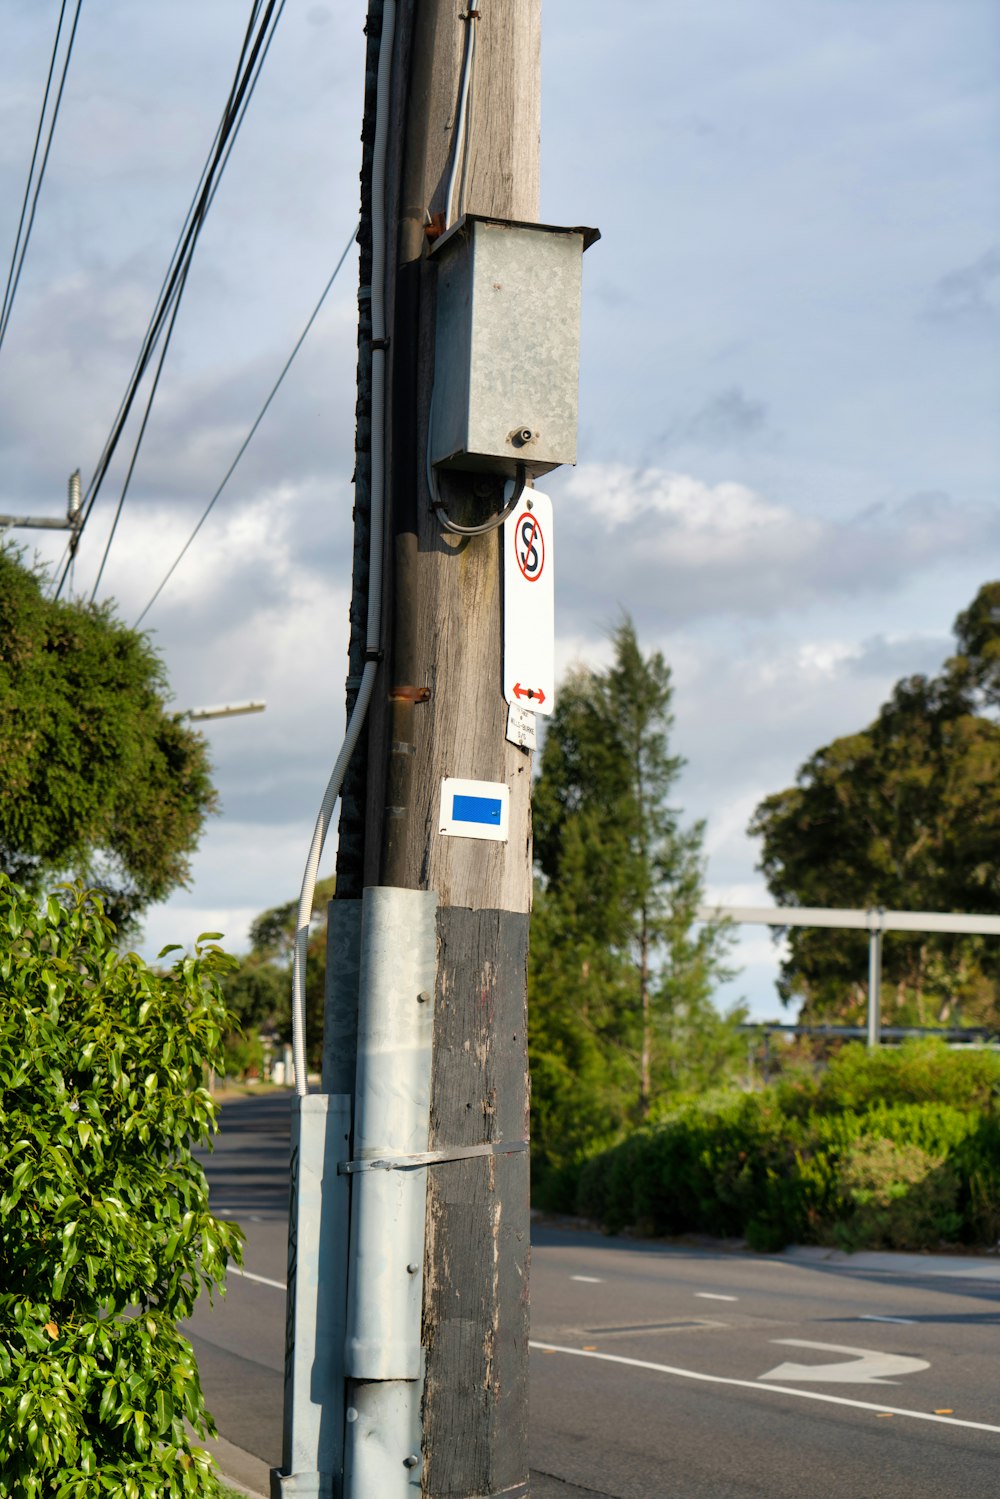 un poste de teléfono con una señal de no estacionamiento